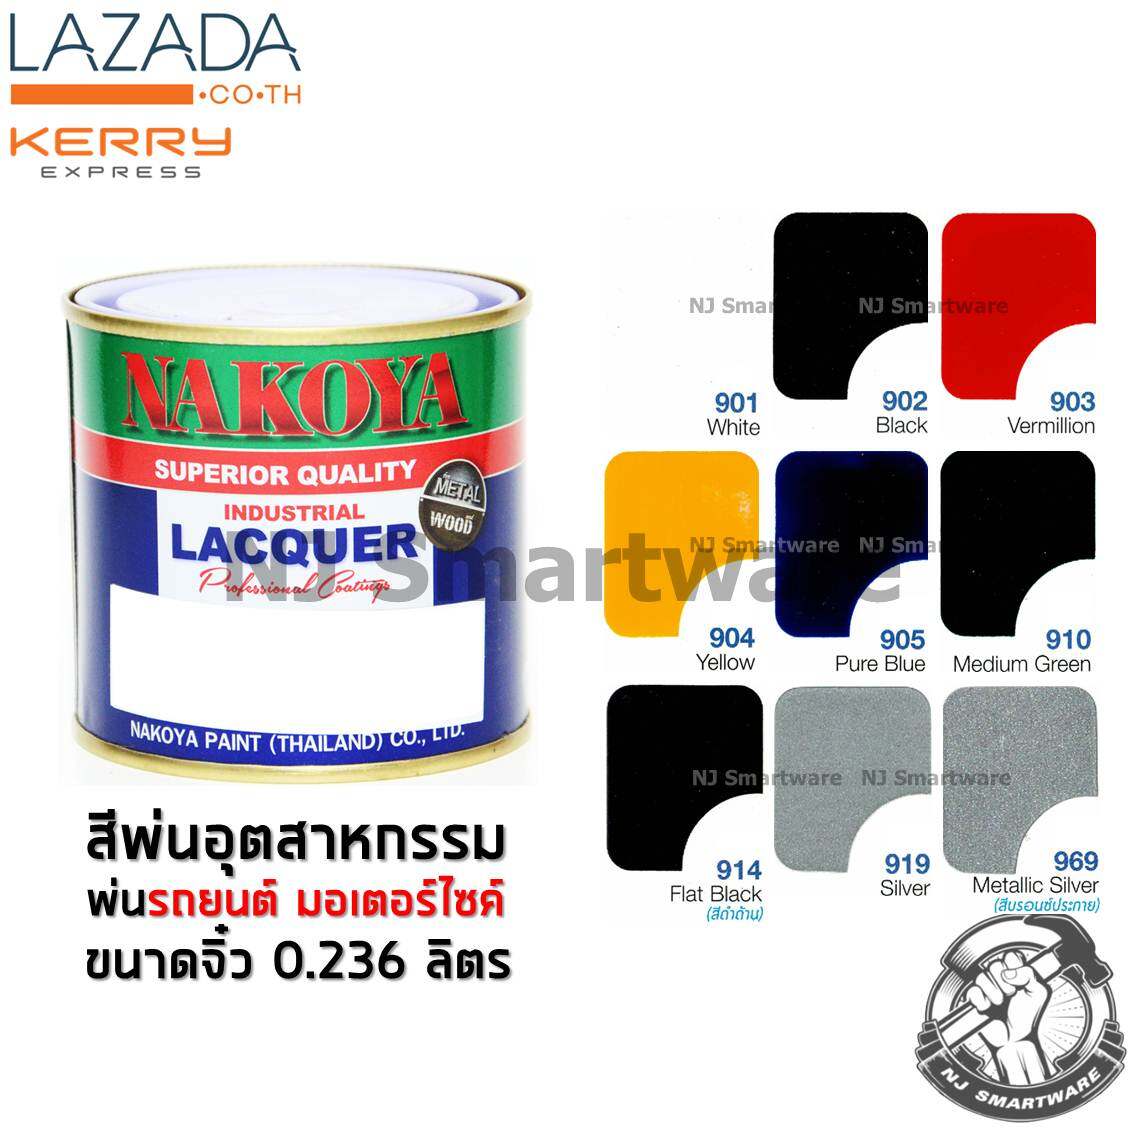 สีพ่นรถยนต์นาโกย่า สีพ่นอุตสาหกรรม สีพ่นมอเตอร์ไซค์ ขนาด 0.236 ลิตร (1/2 ไพนต์) - NAKOYA Industrial Lacquer Colour 0.236 Liter (1/2 Pint)